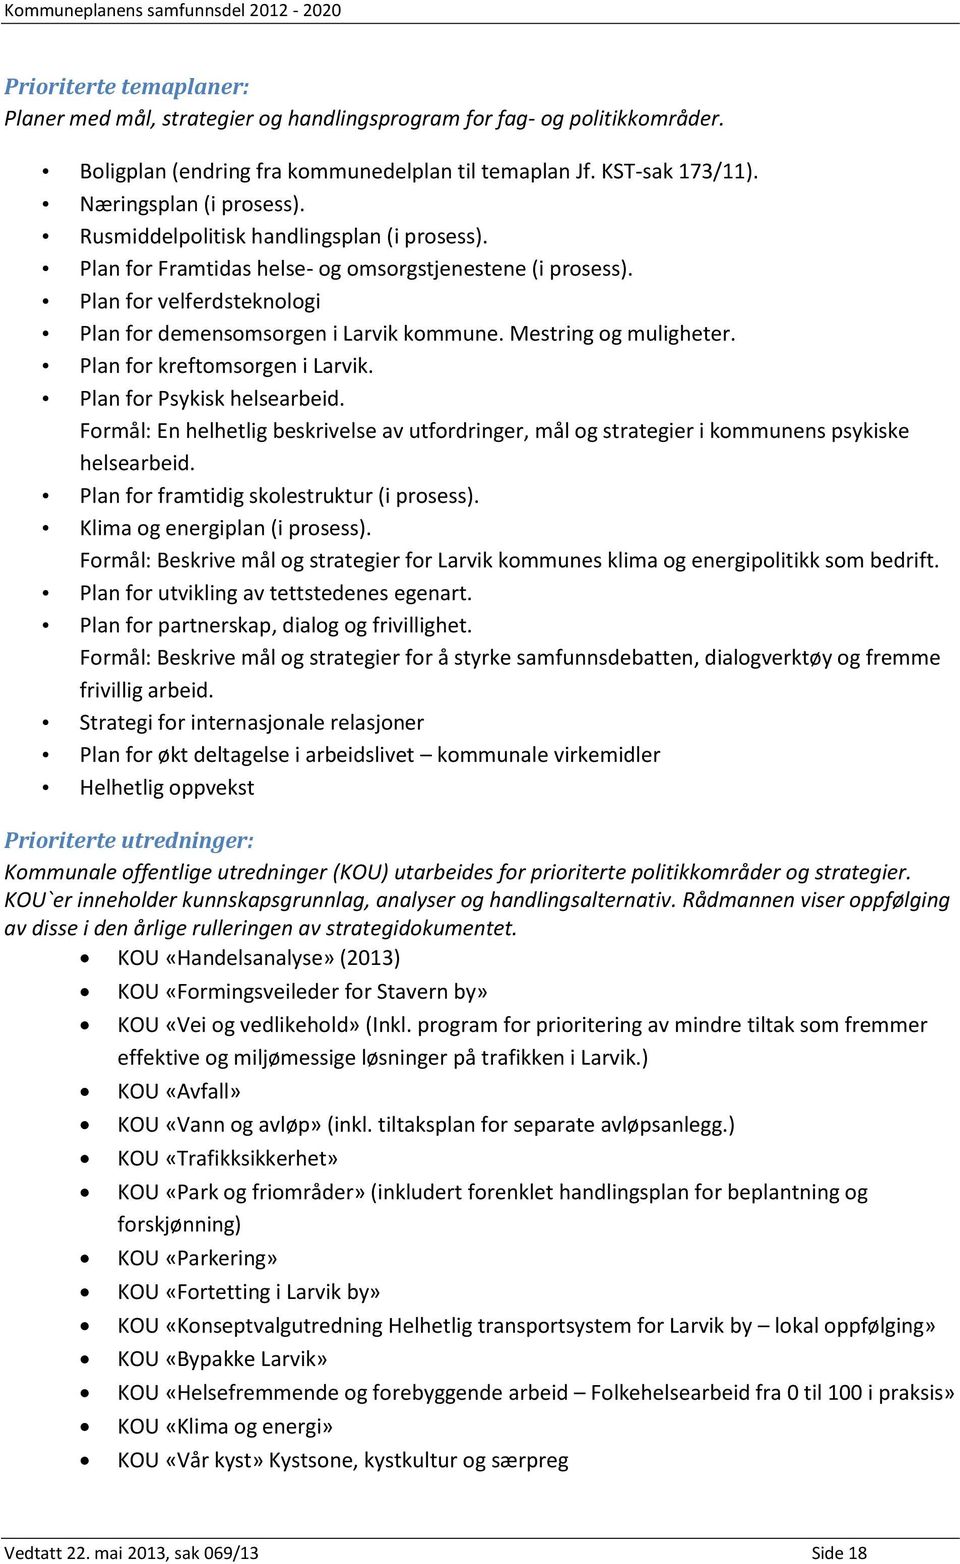 Plan for kreftomsorgen i Larvik. Plan for Psykisk helsearbeid. Formål: En helhetlig beskrivelse av utfordringer, mål og strategier i kommunens psykiske helsearbeid.